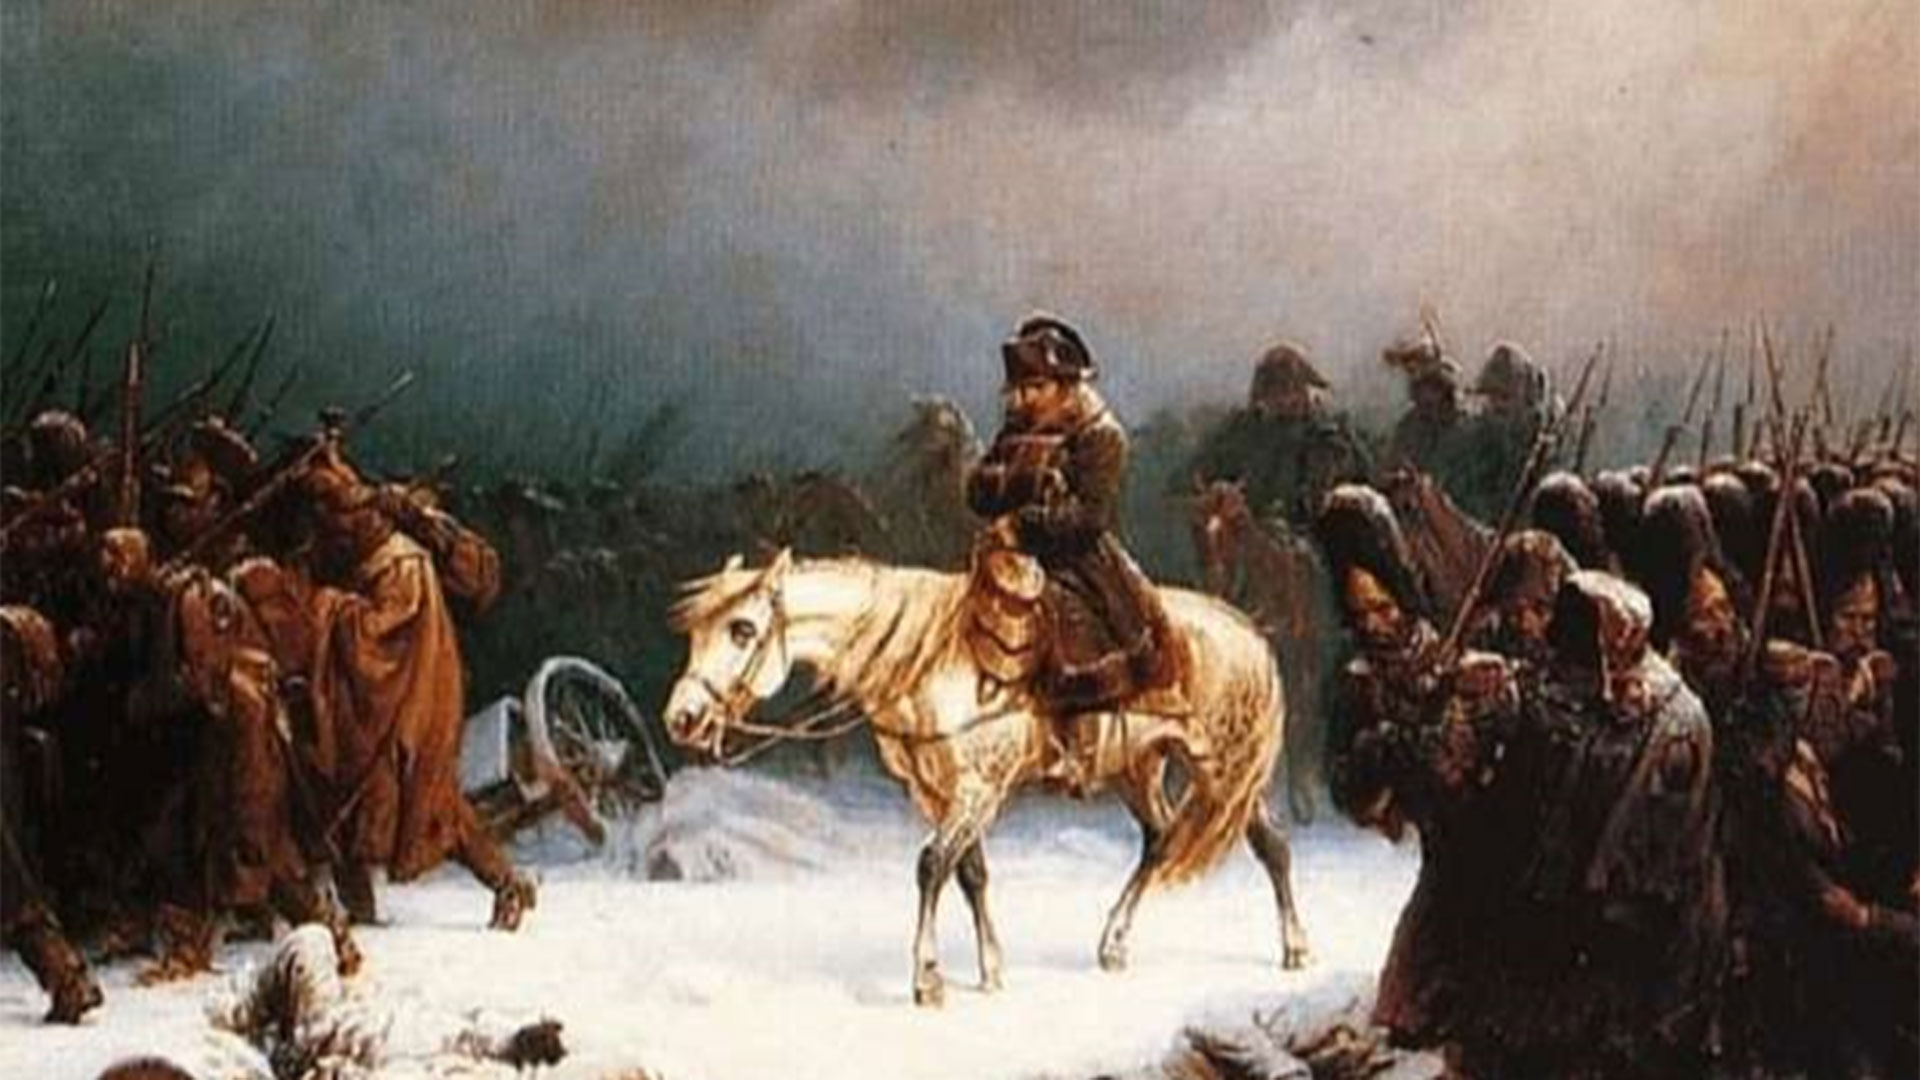 De los más de 600 mil hombres que componían el ejército napoleónico, solo cruzaron la frontera unos 30 mil